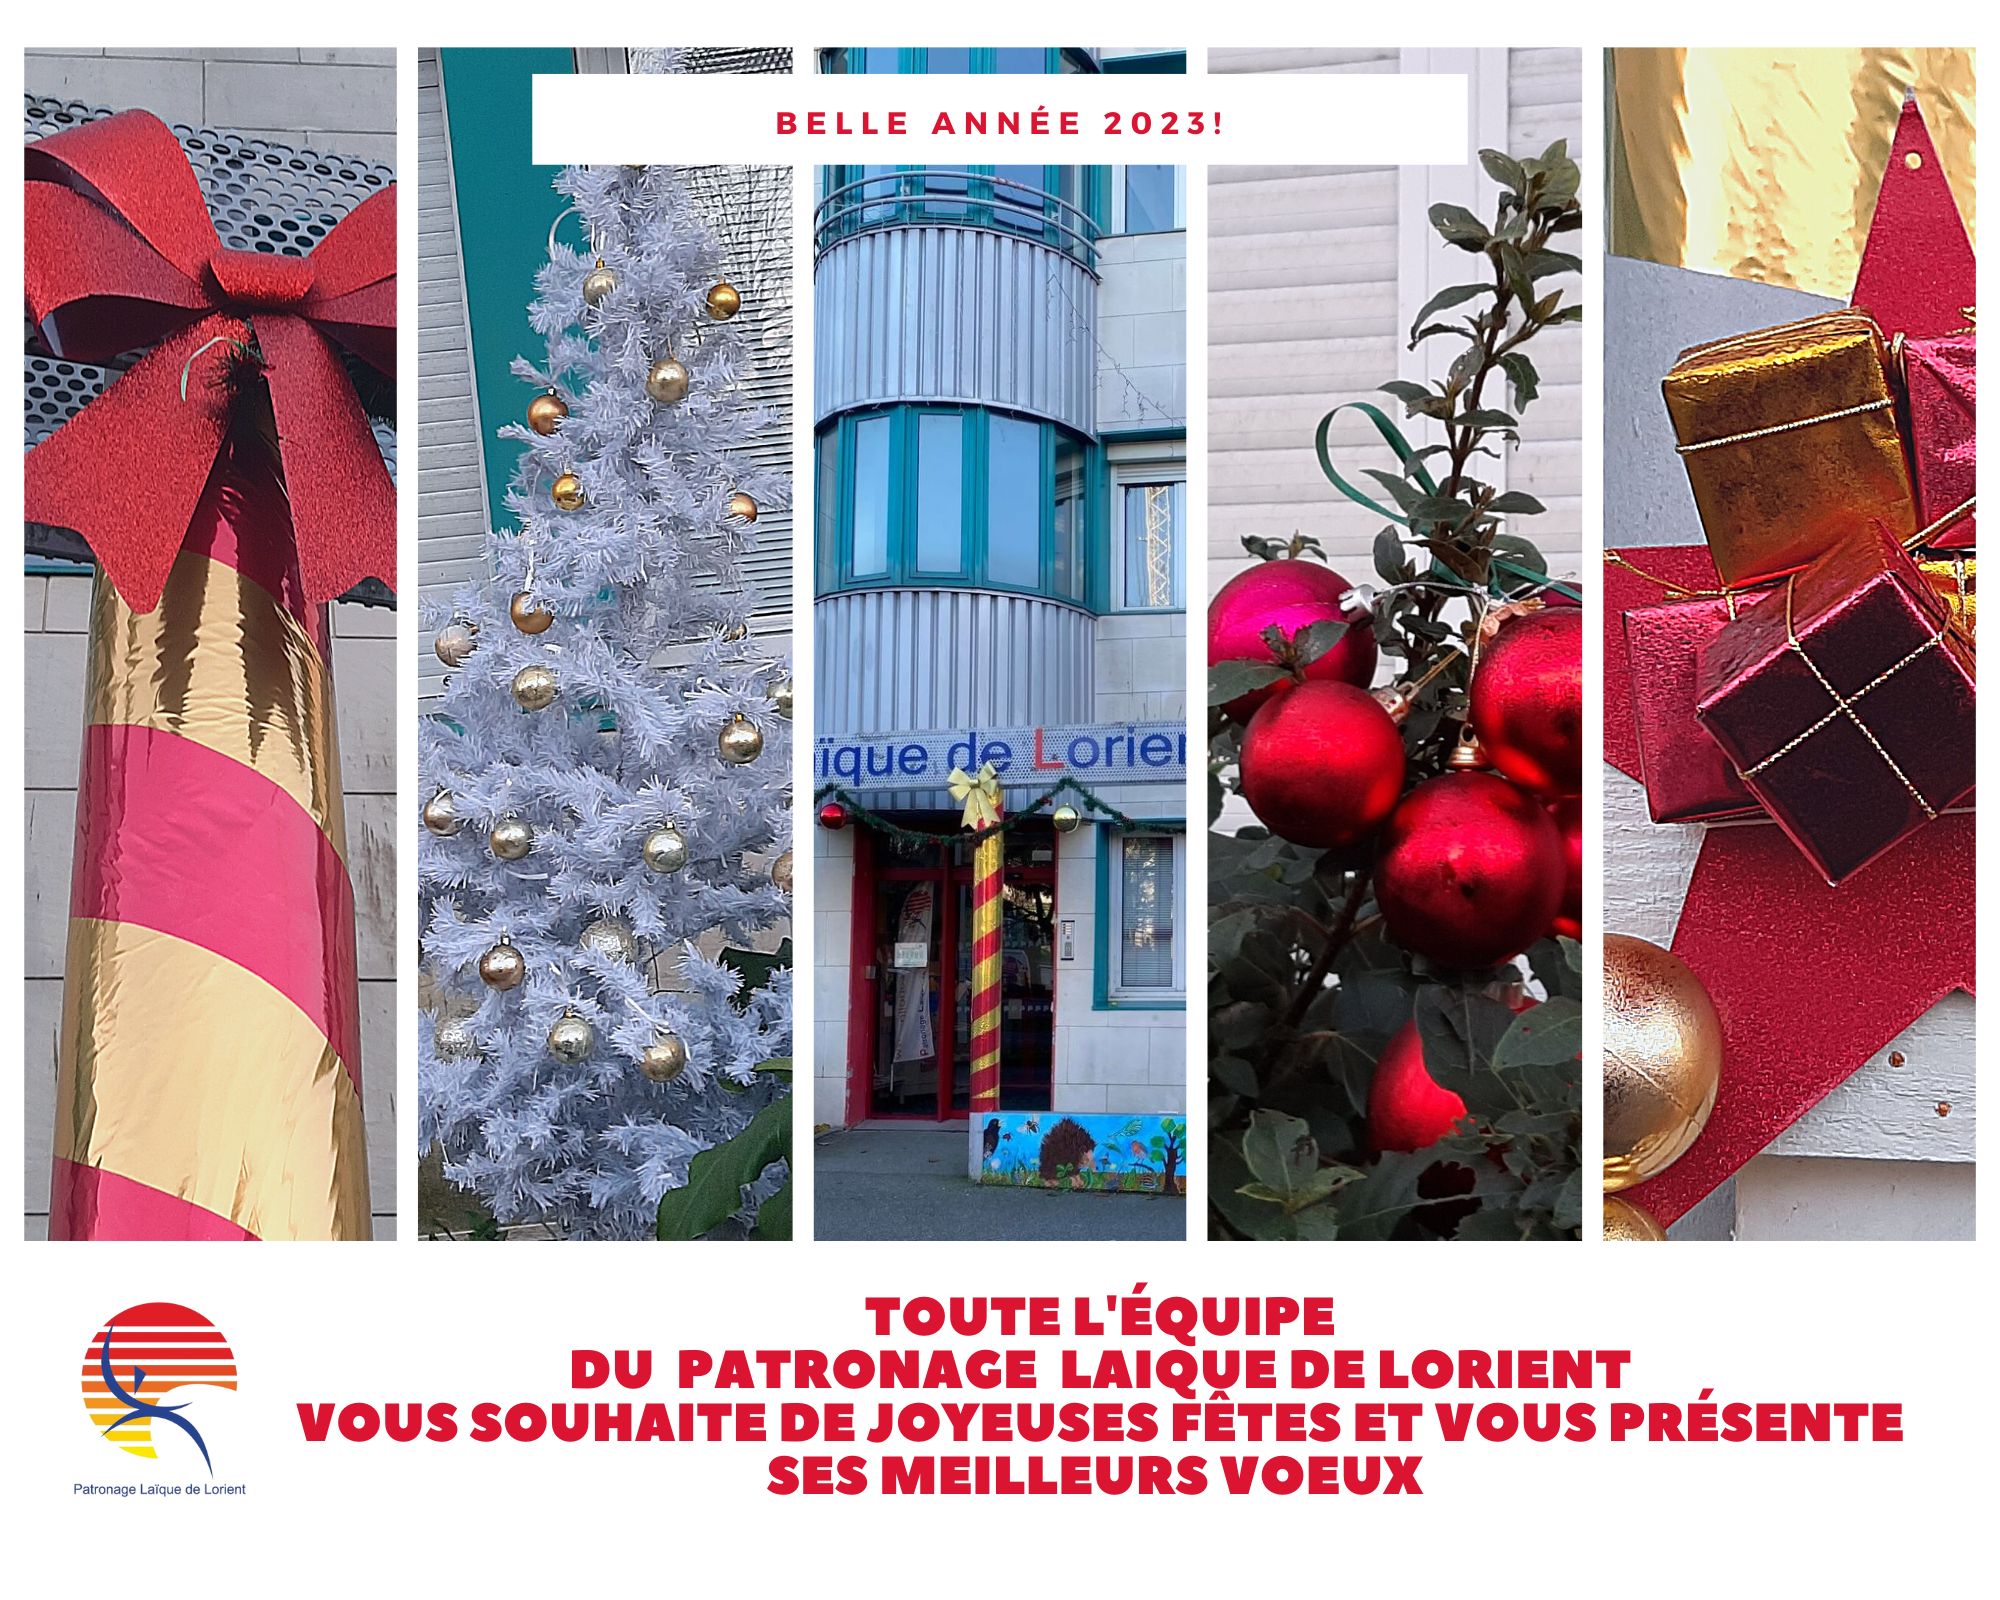 Marc Renault président du Patronage laique de Lorient vous souhaite des joyeuses fêtes et vous présente ses meilleurs voeux